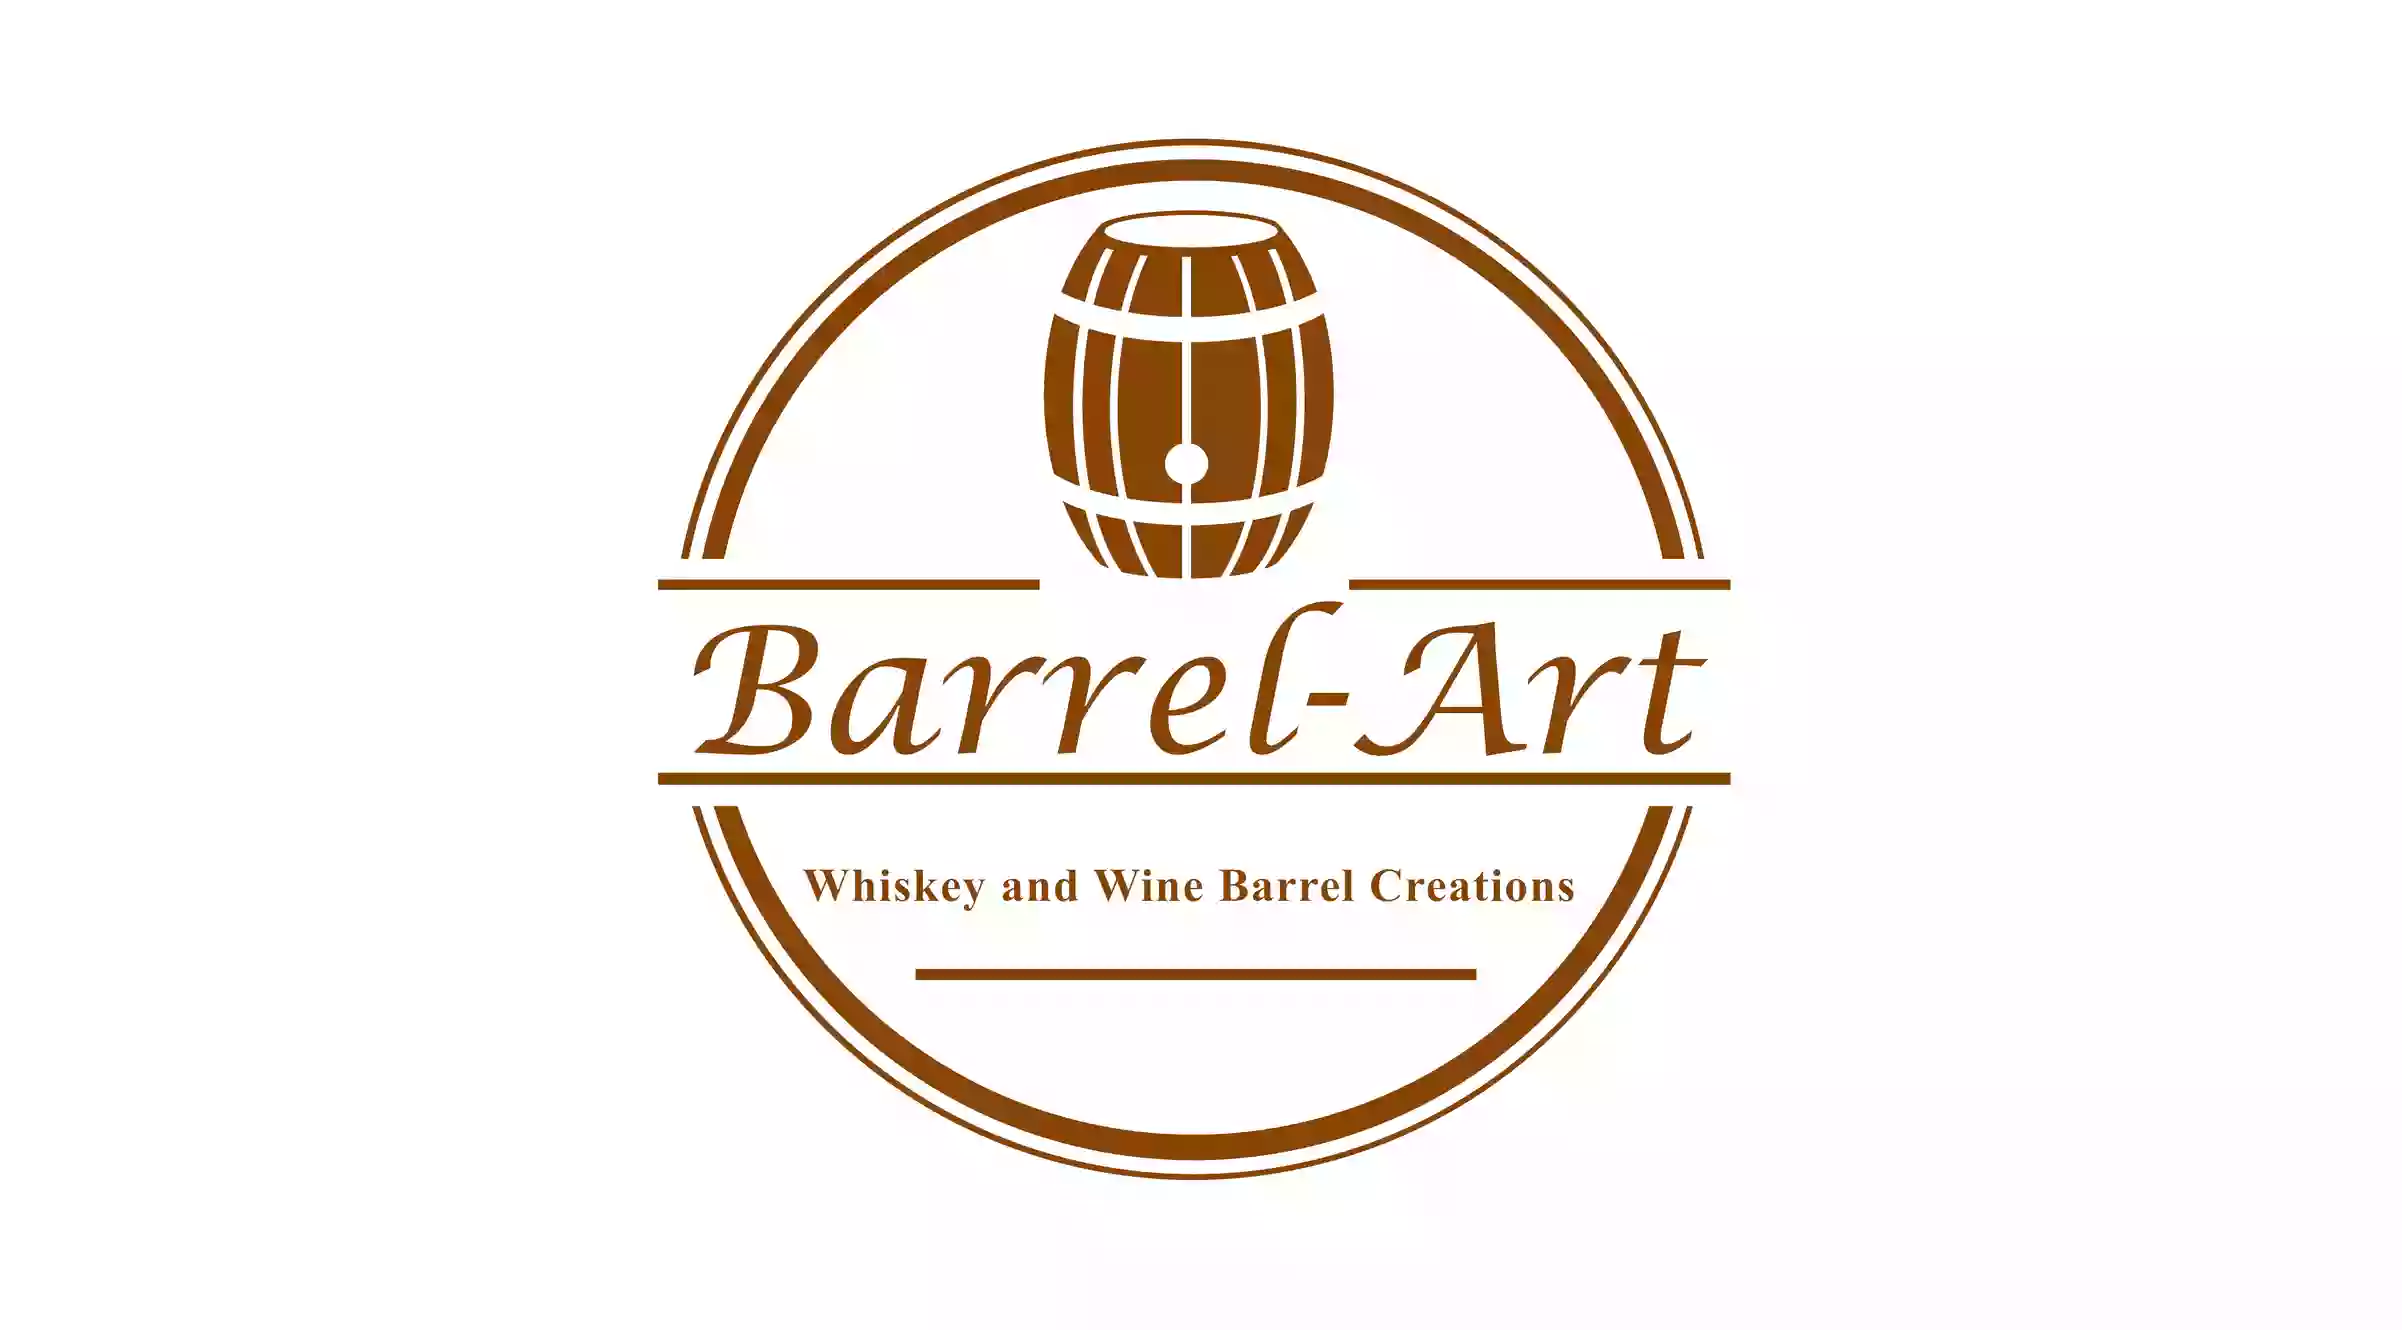 Barrel-Art